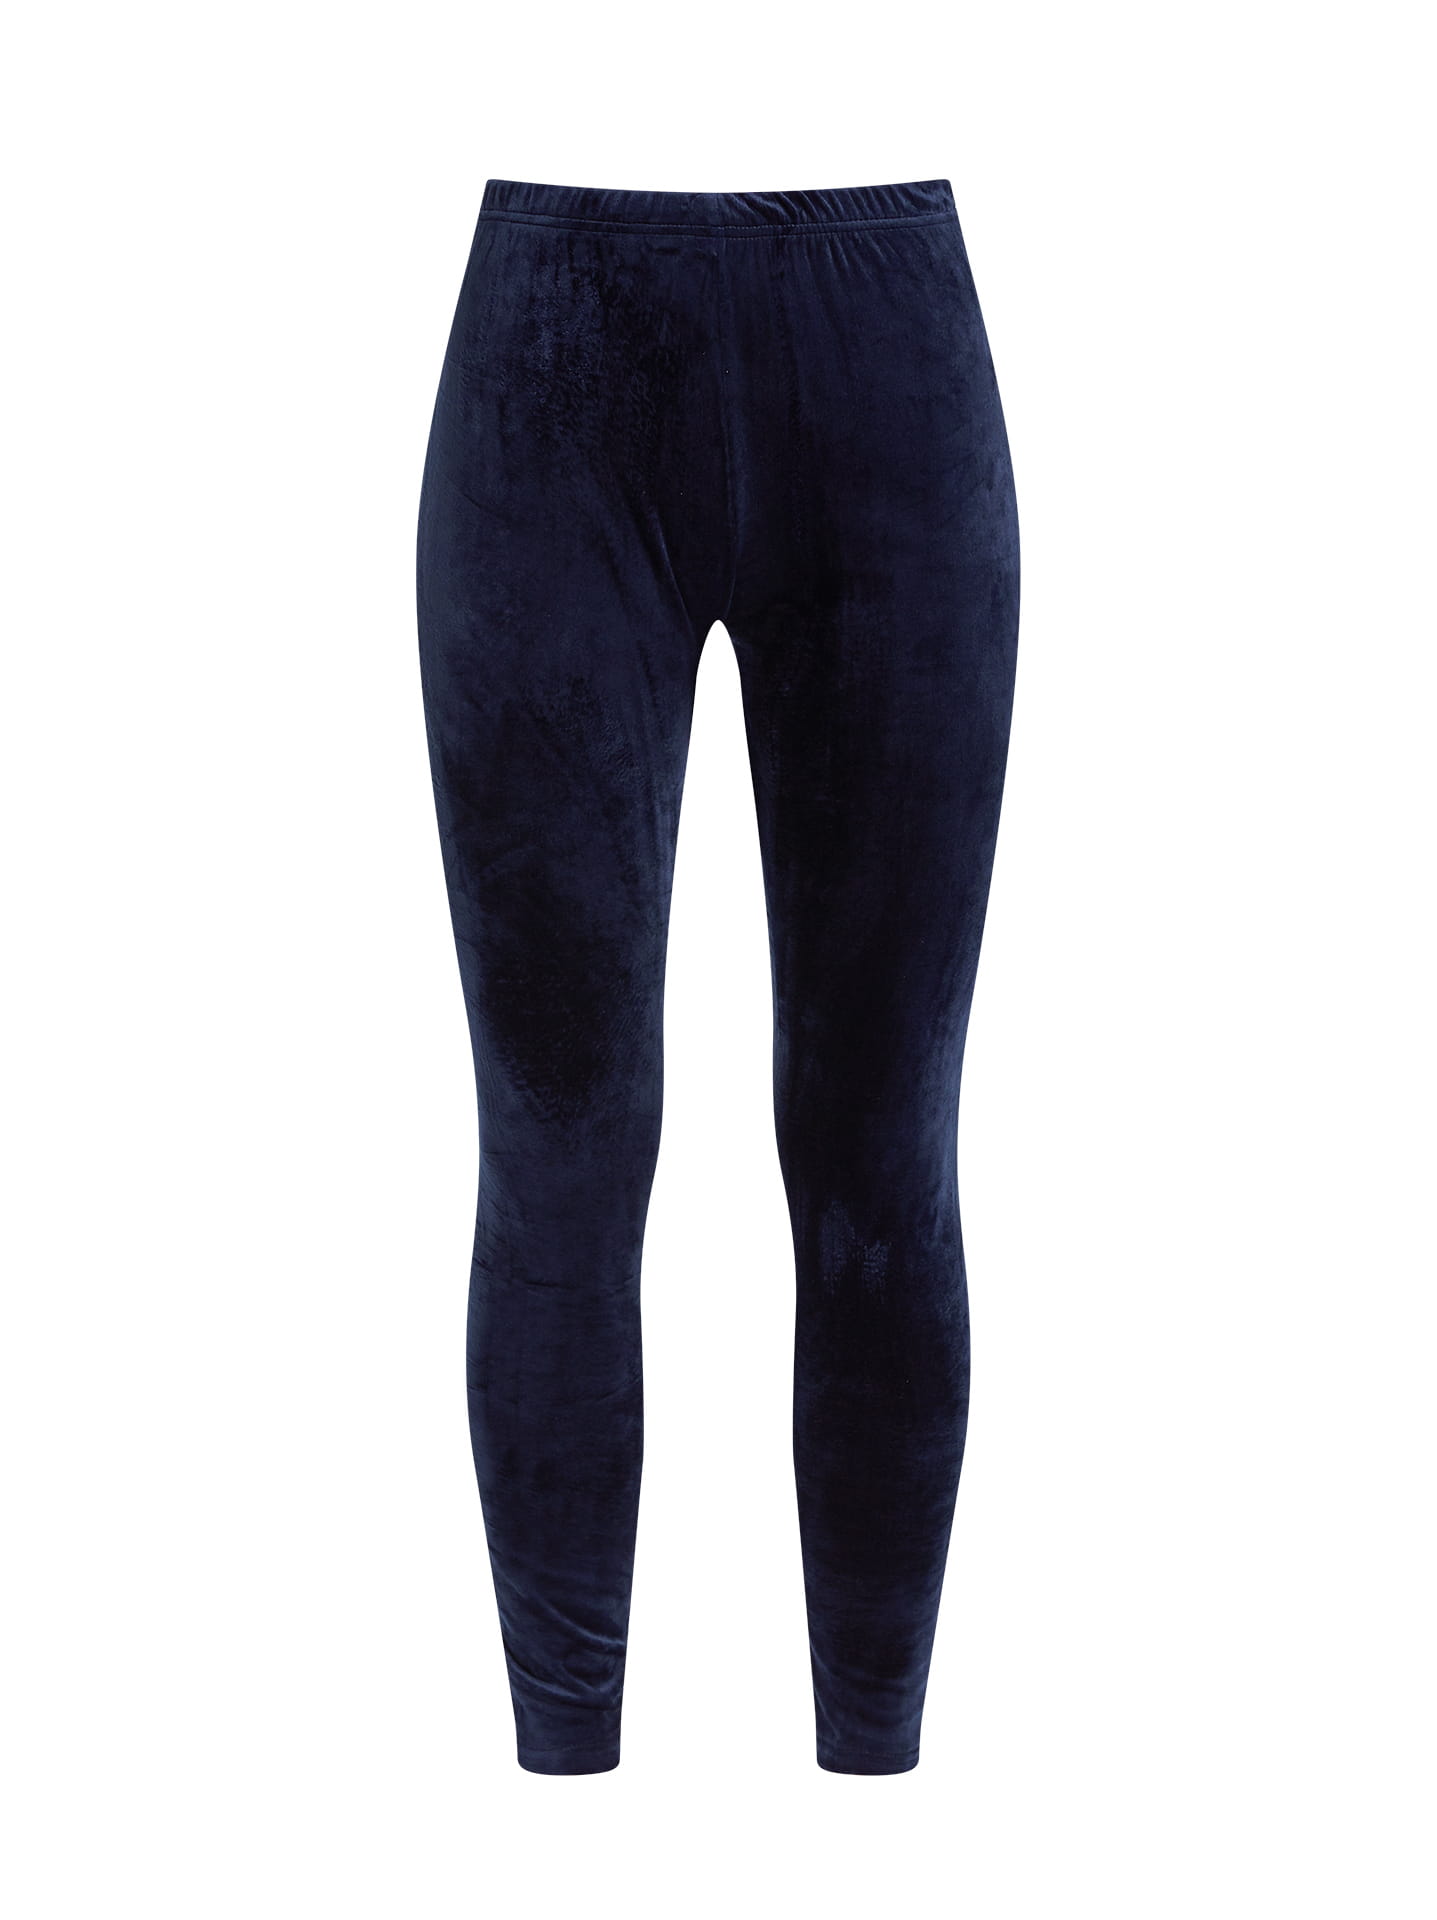 Velvet elastic leggings curvy in dark blue, 8.99€